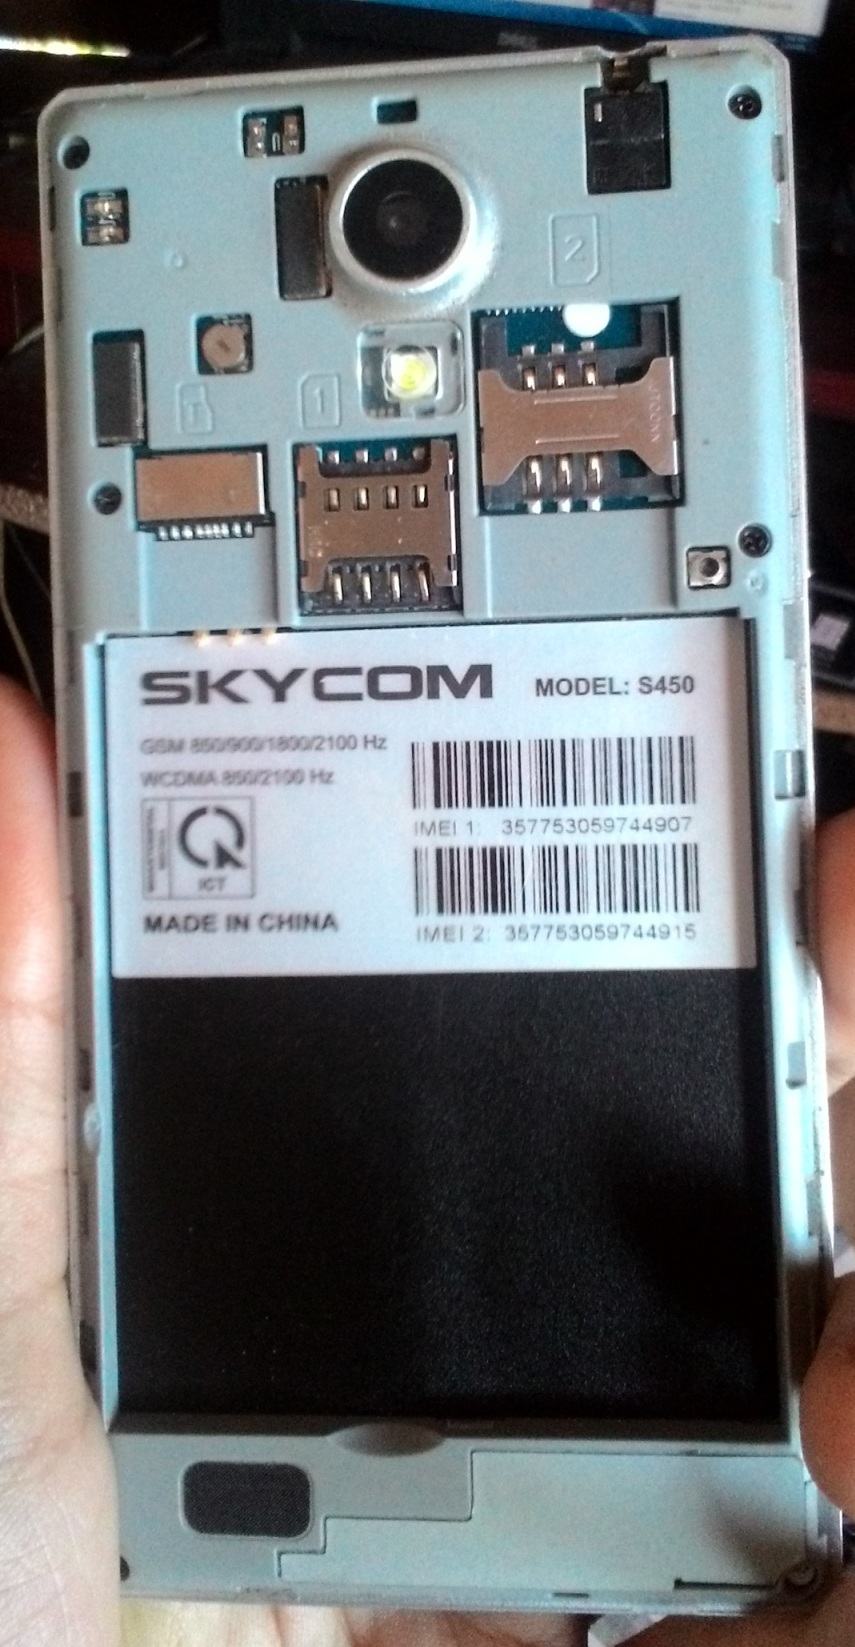 Rom stock Skycom S450 flashtool ok SkycomS450